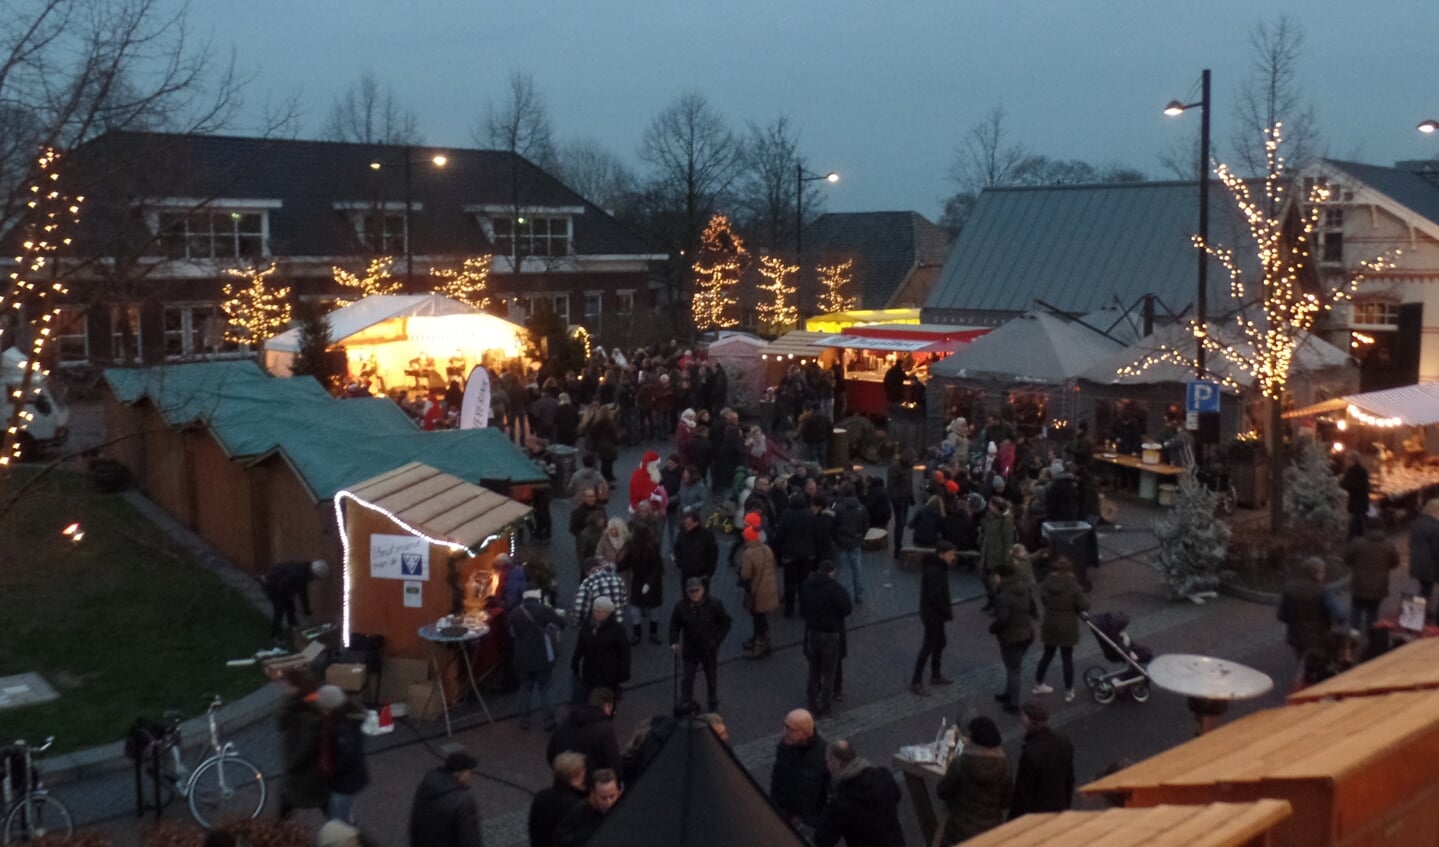 Er kwamen zaterdag ondanks de kou ruim 1000 bezoekers naar de Vordense Kerstmarkt zo bleek uit metingen. De bezoekers bleven wel wat korter. Foto: Jan Hendriksen